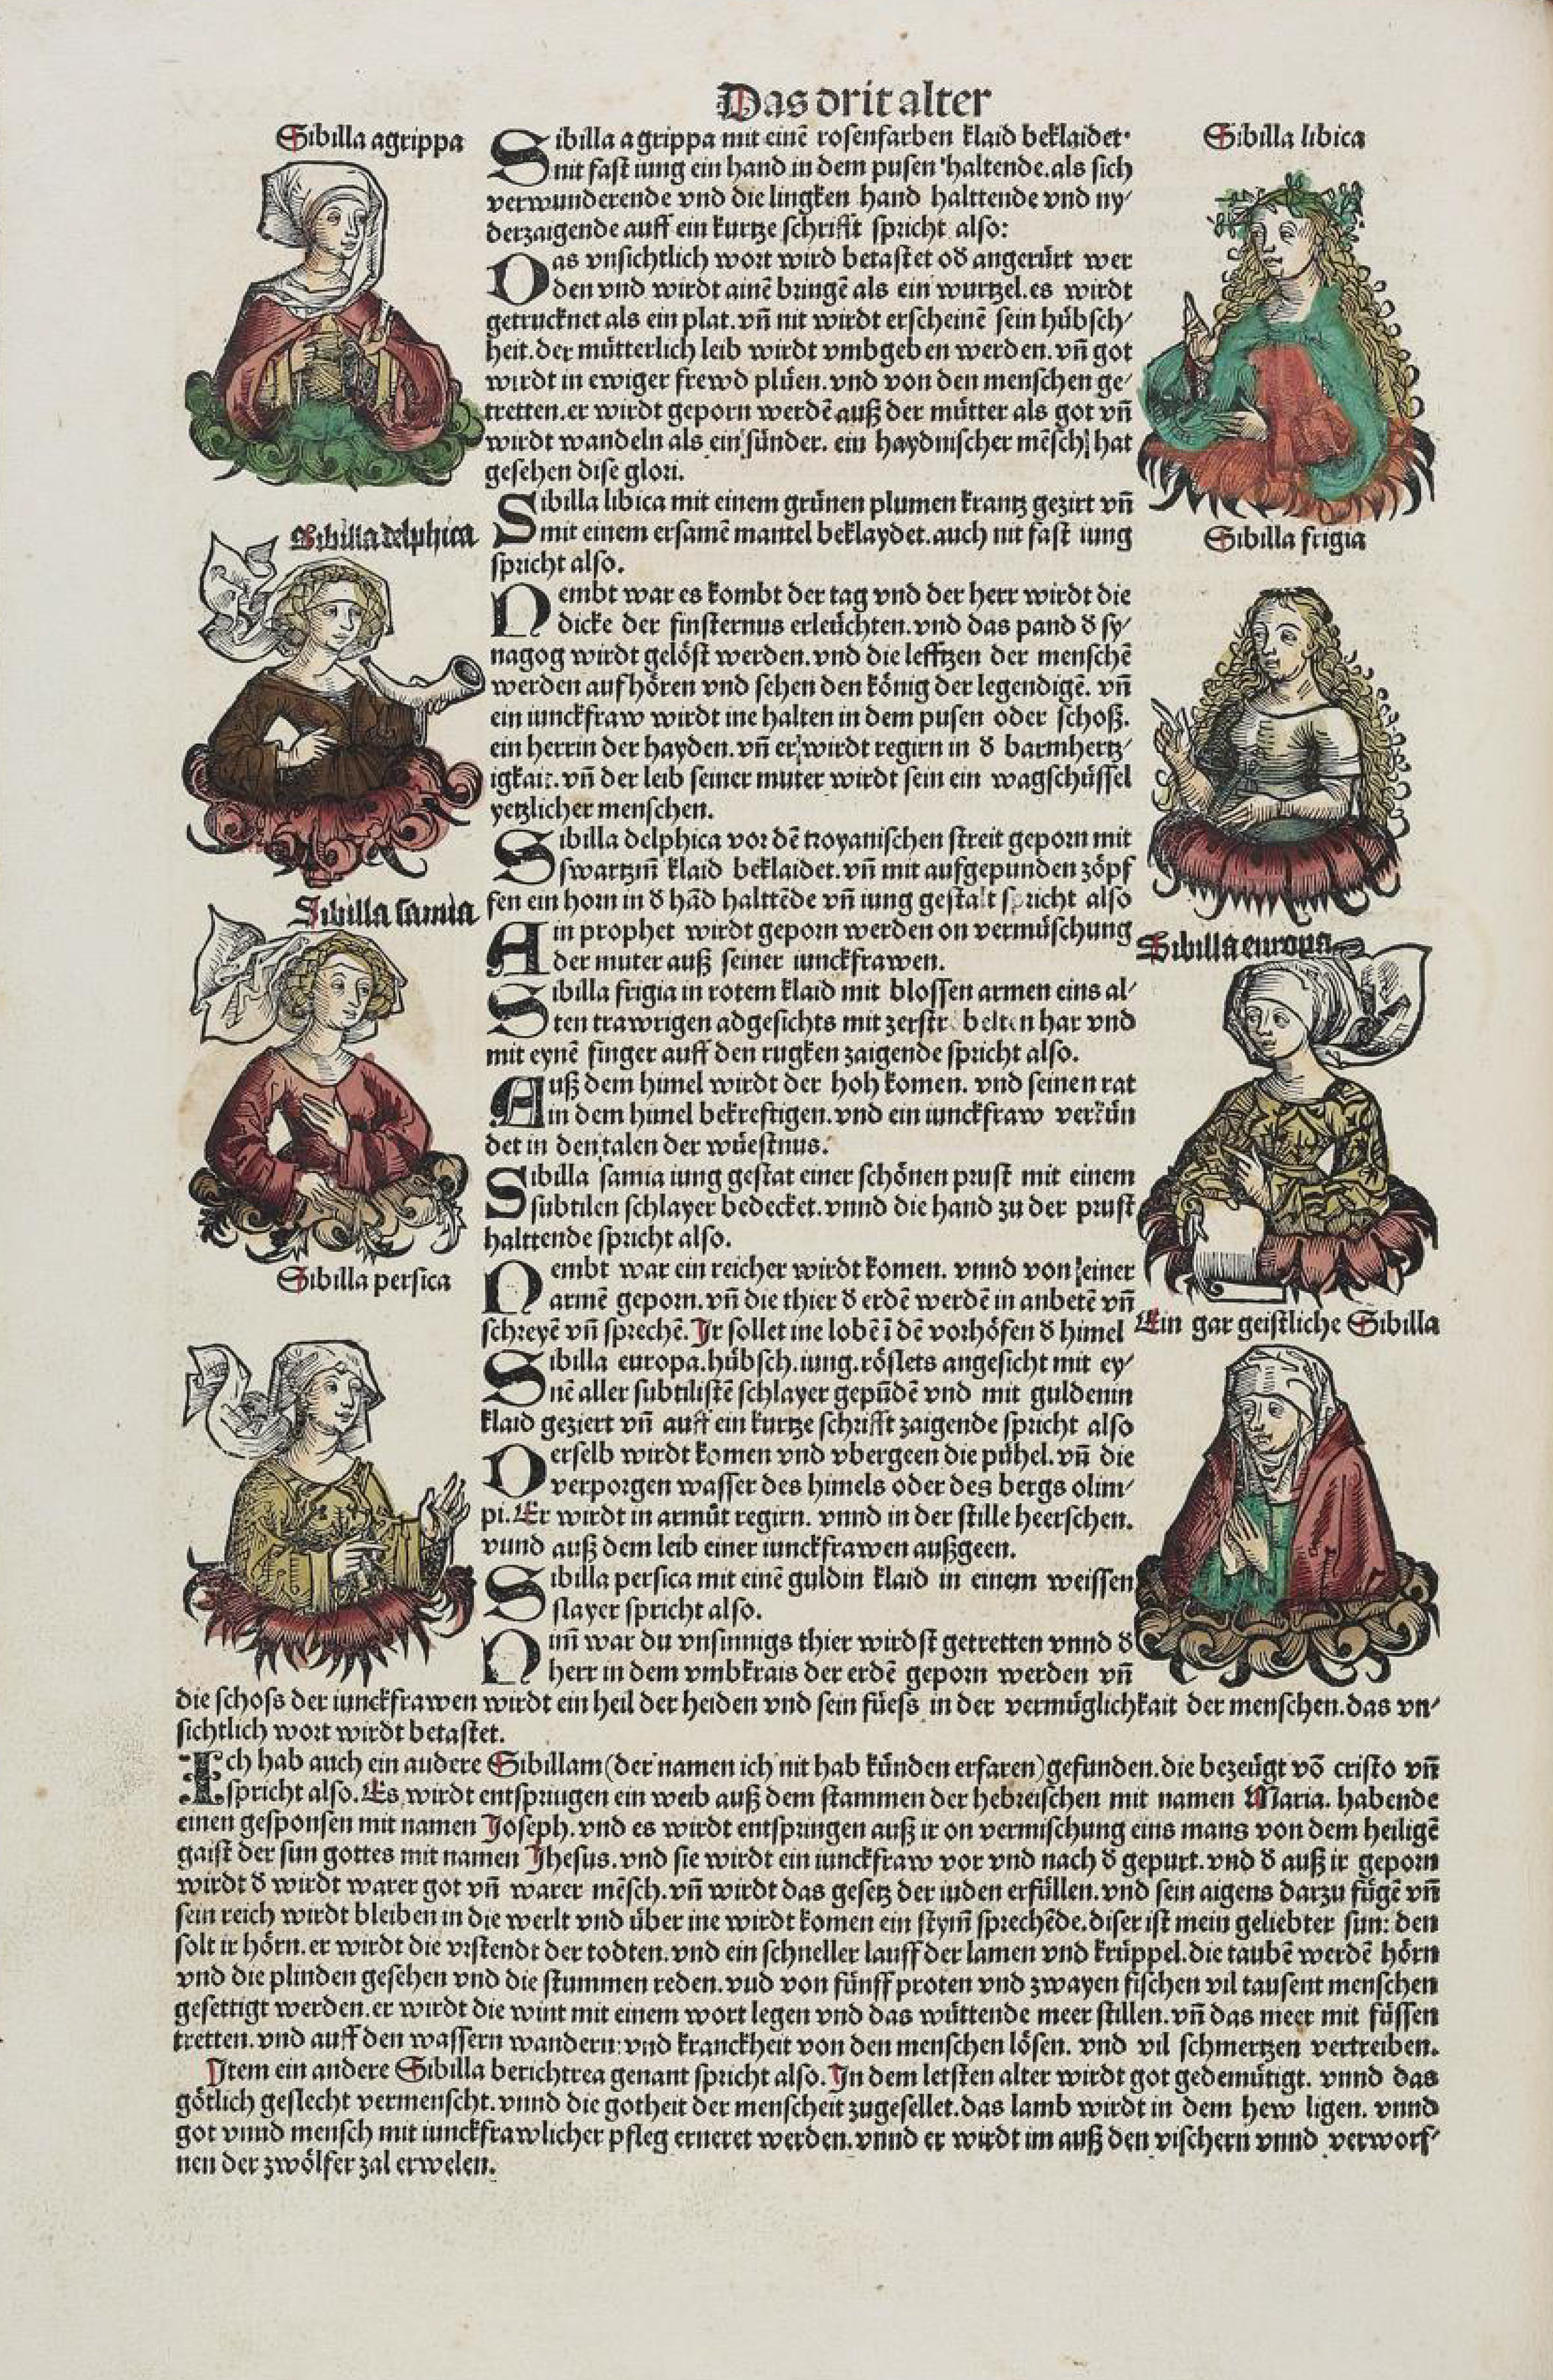 Seite aus dem Buch der Chroniken und Geschichten mit Abbildungen von Sibyllen und jeweiligen Zitaten.